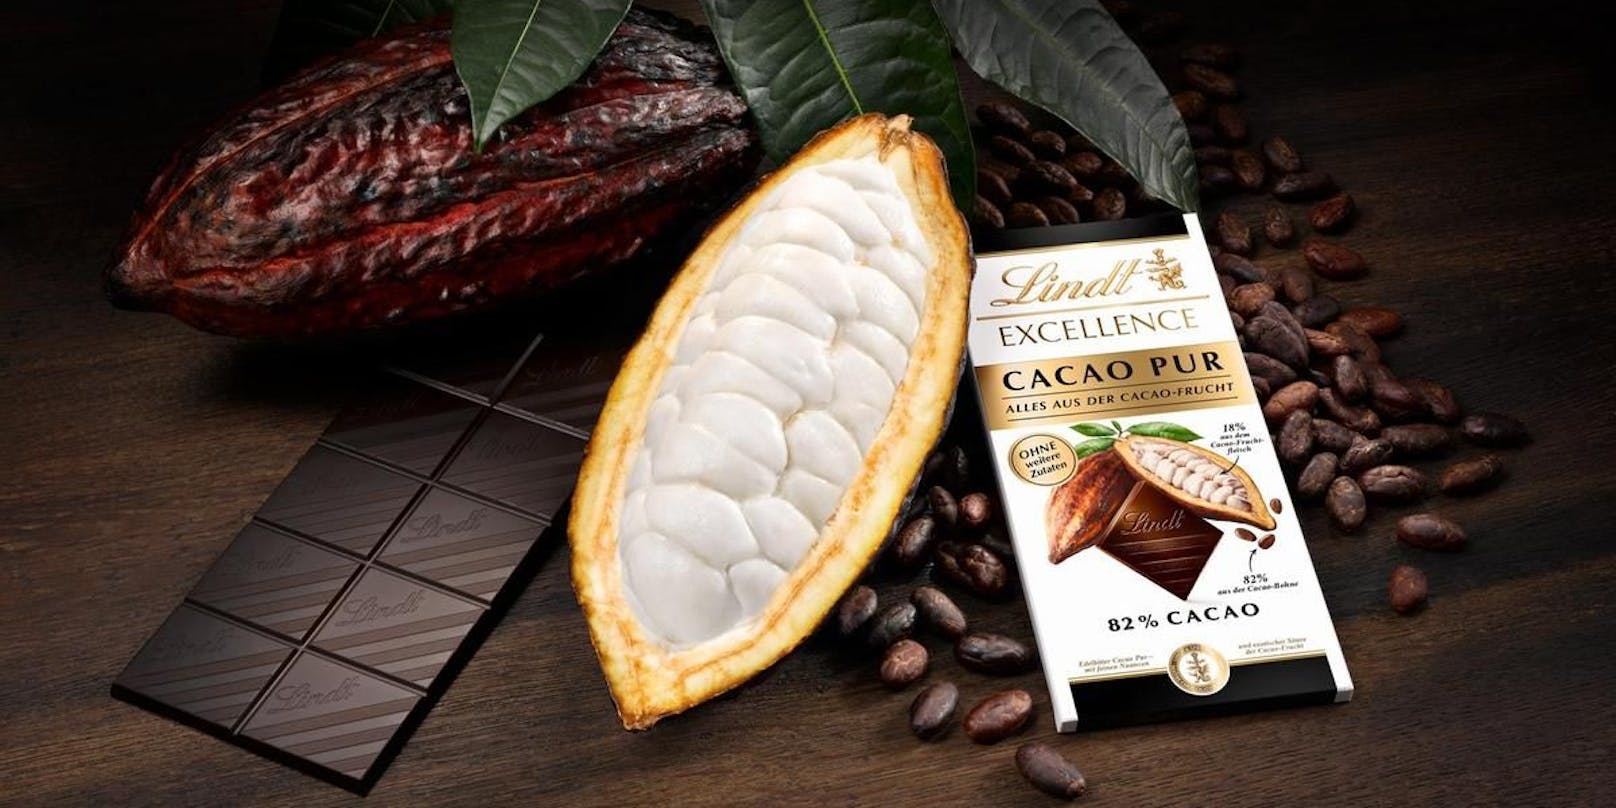 Die neuste Lindt-Kreation "Excellence Cacao Pur" darf nicht Schokolade heißen.